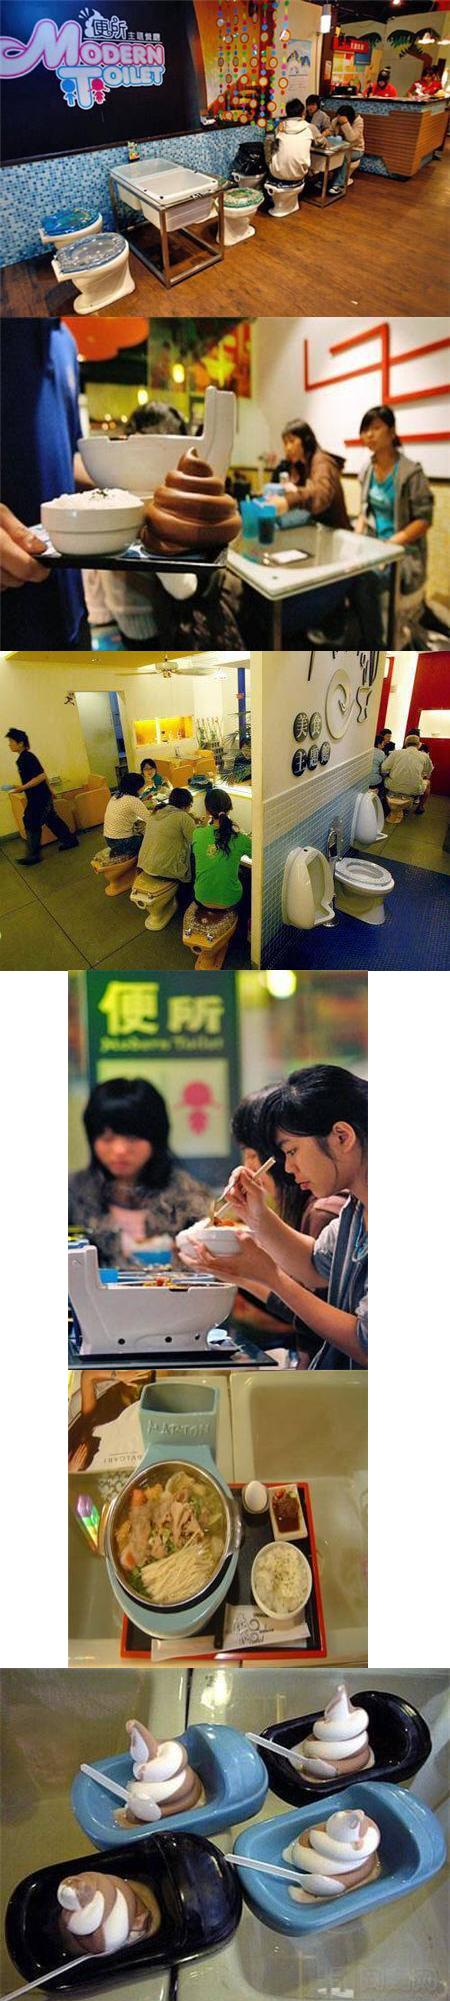 Il parait qu'on peut juger un restaurant sur l'état de ses toilettes... Là, les toilettes sont top de chez top. Seul problème, les toilettes sont le restaurant. Et regarder un peu la nourriture qu'ils servent... Appétissant non ?